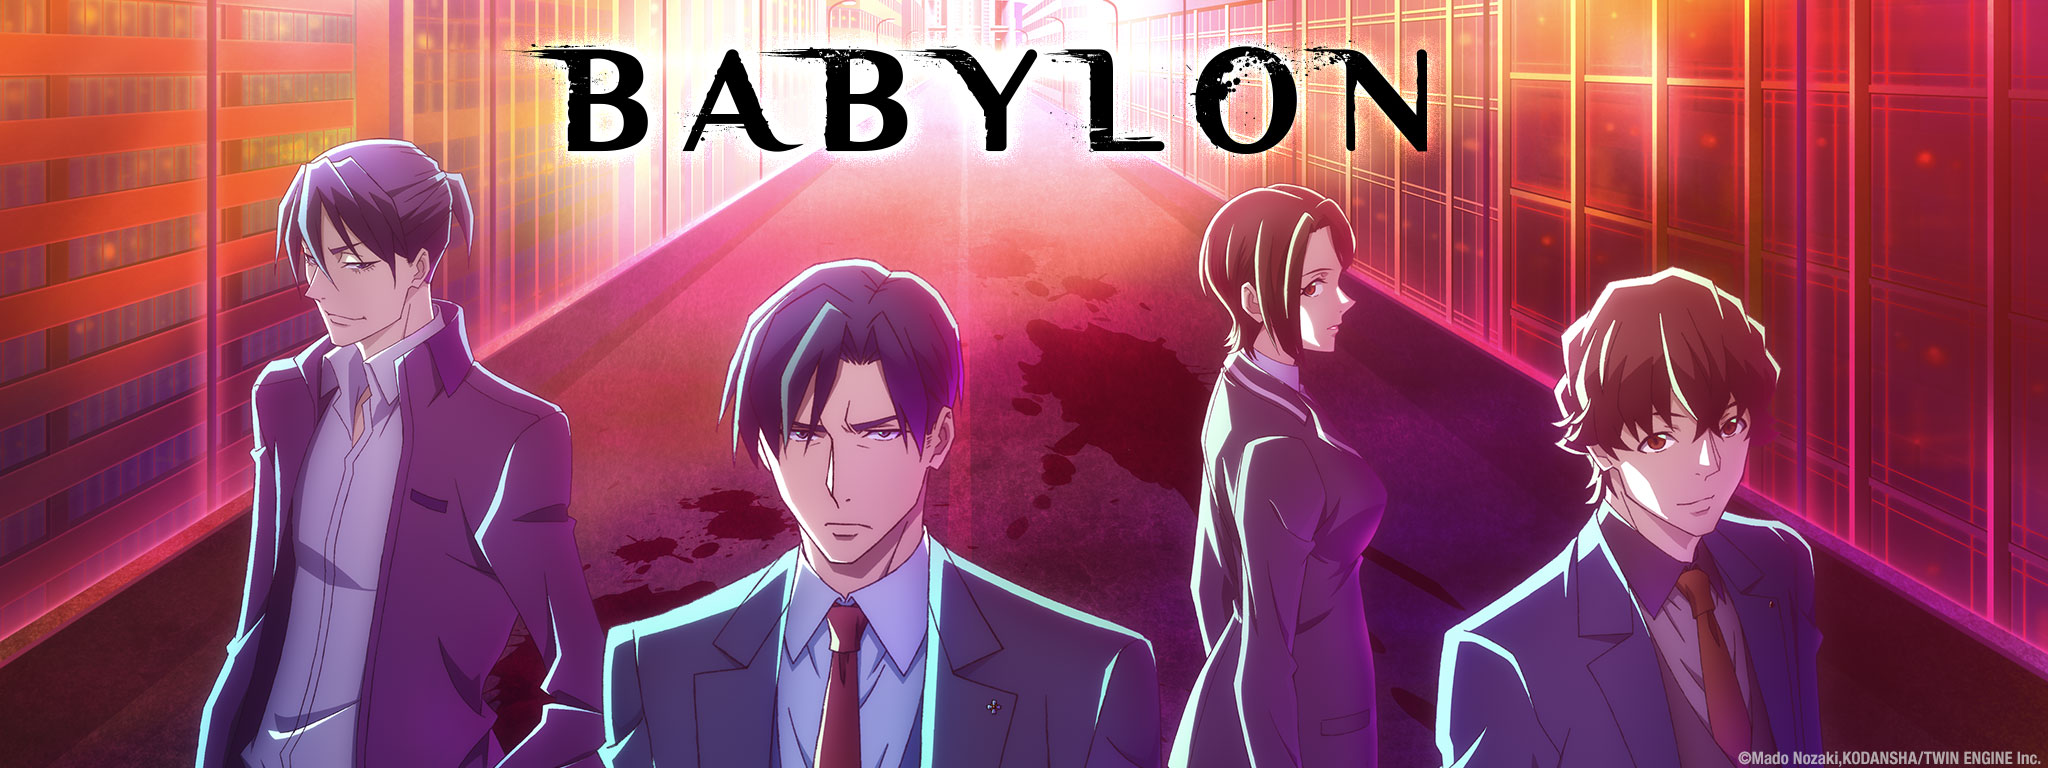 Title Art for Babylon